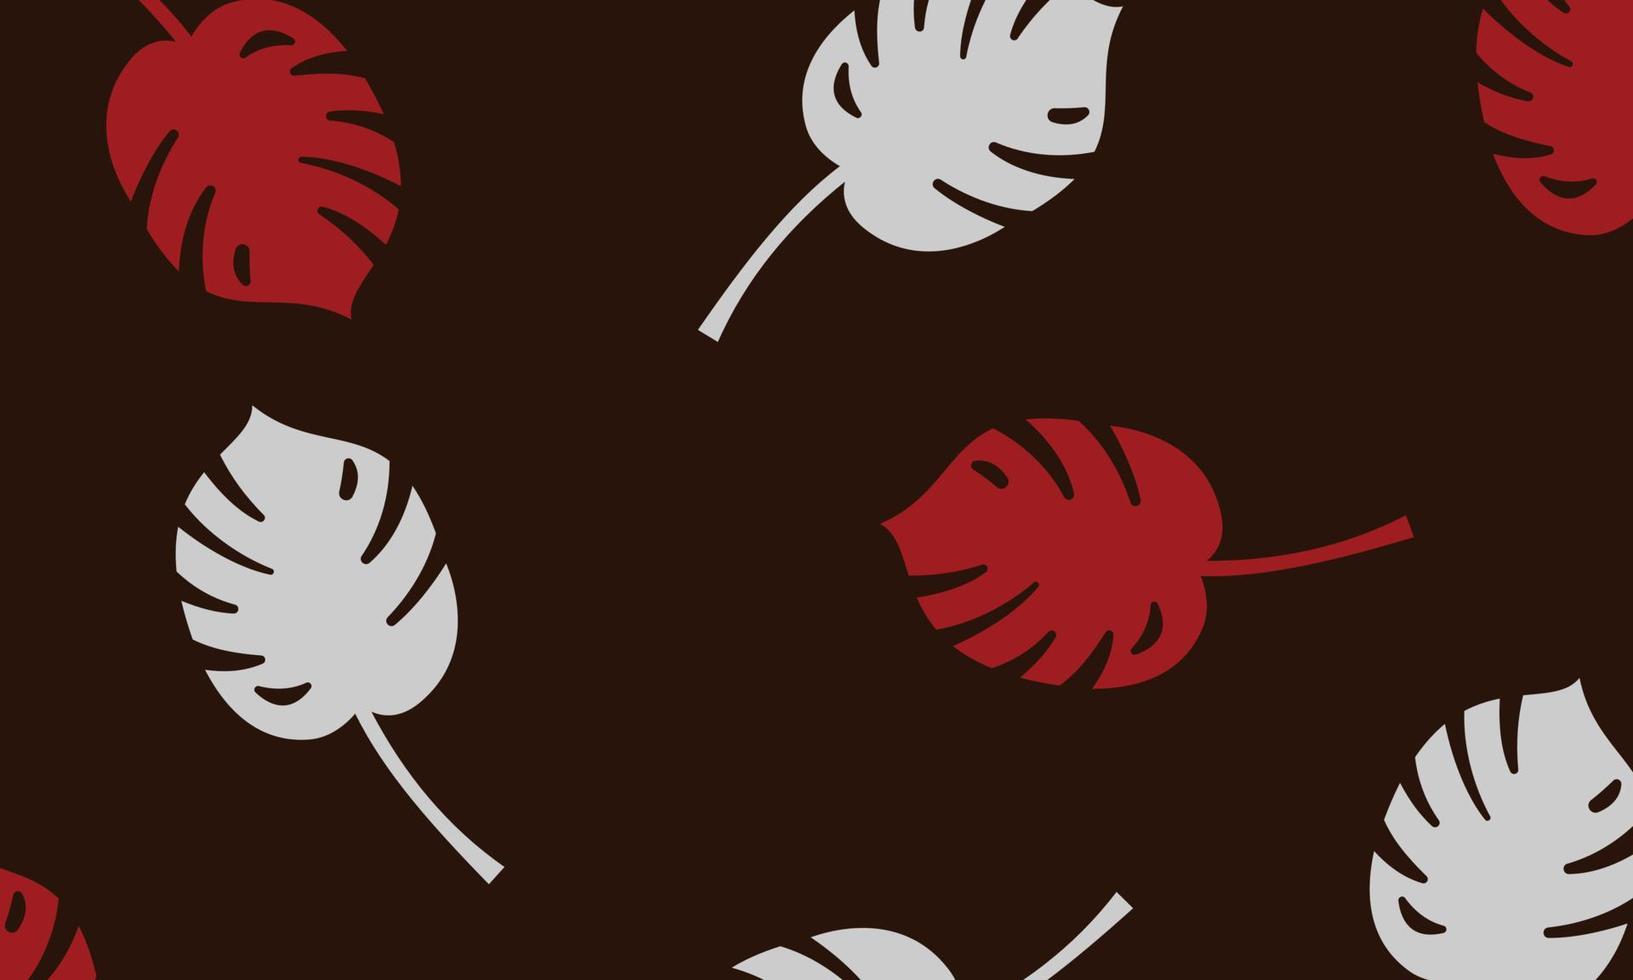 marrone scuro, rosso modello doodle vettoriale con foglie.